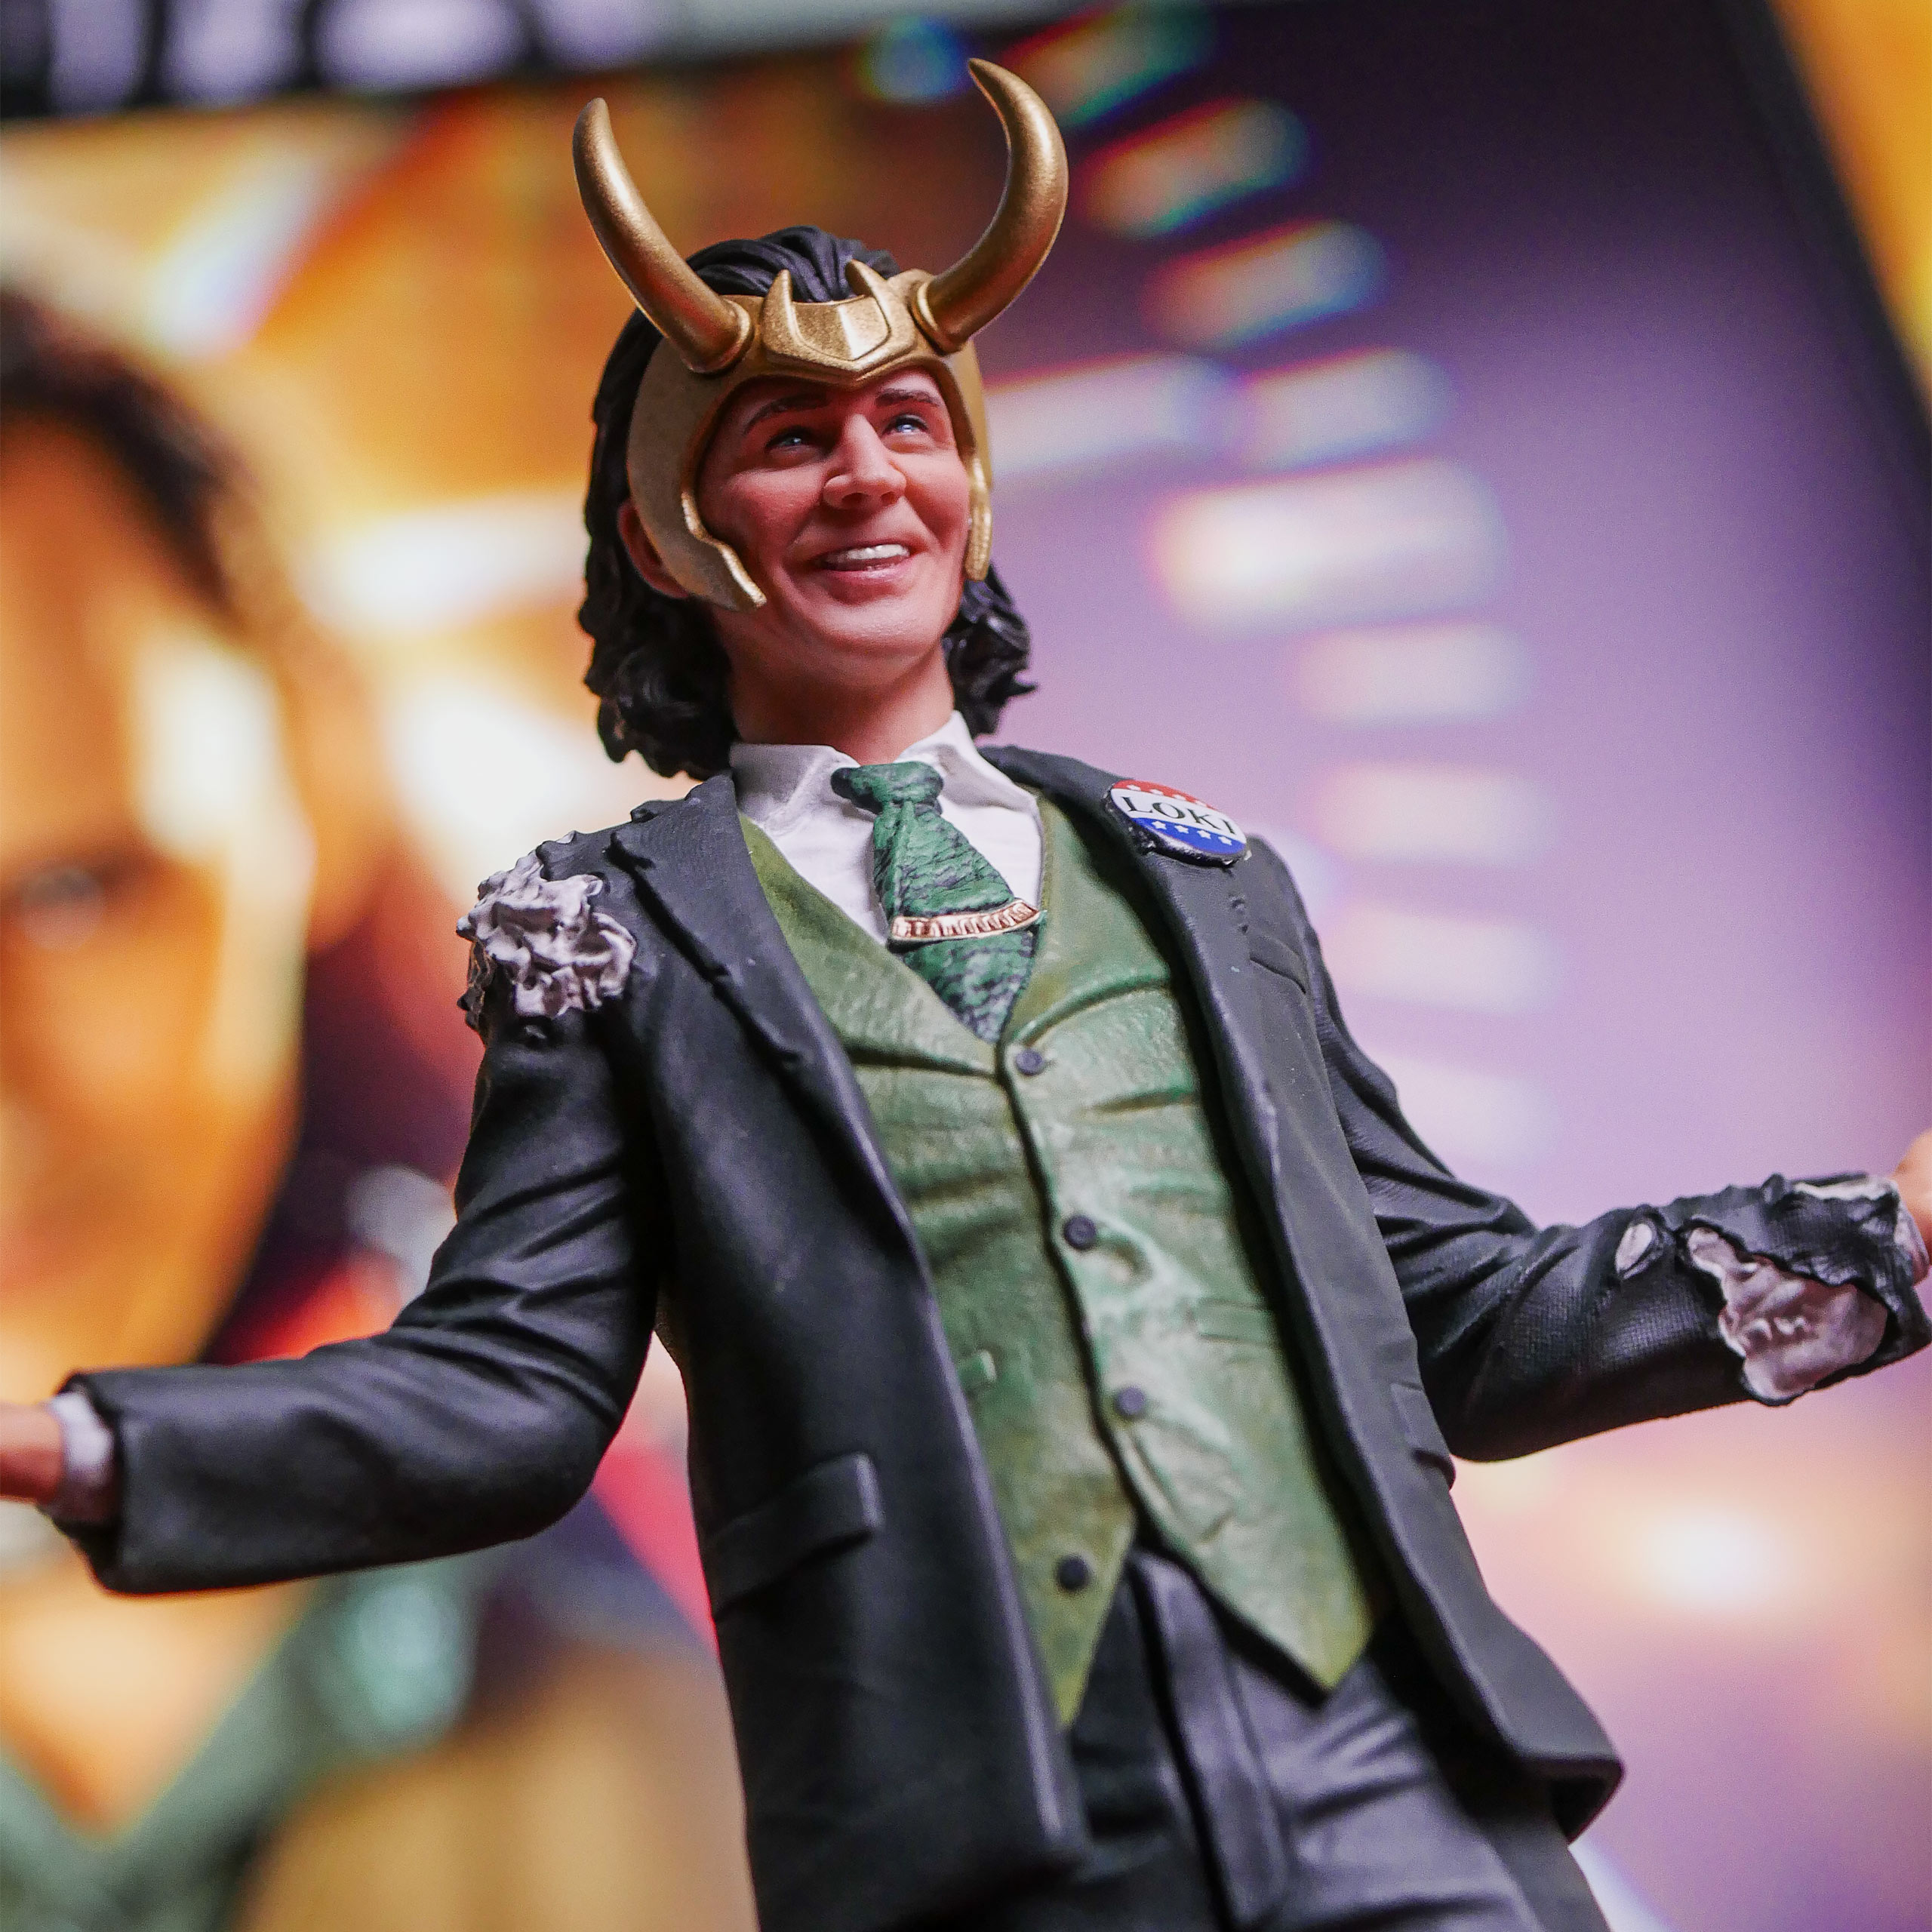 Loki - Président BDS Art Scale Deluxe Statue 1:10